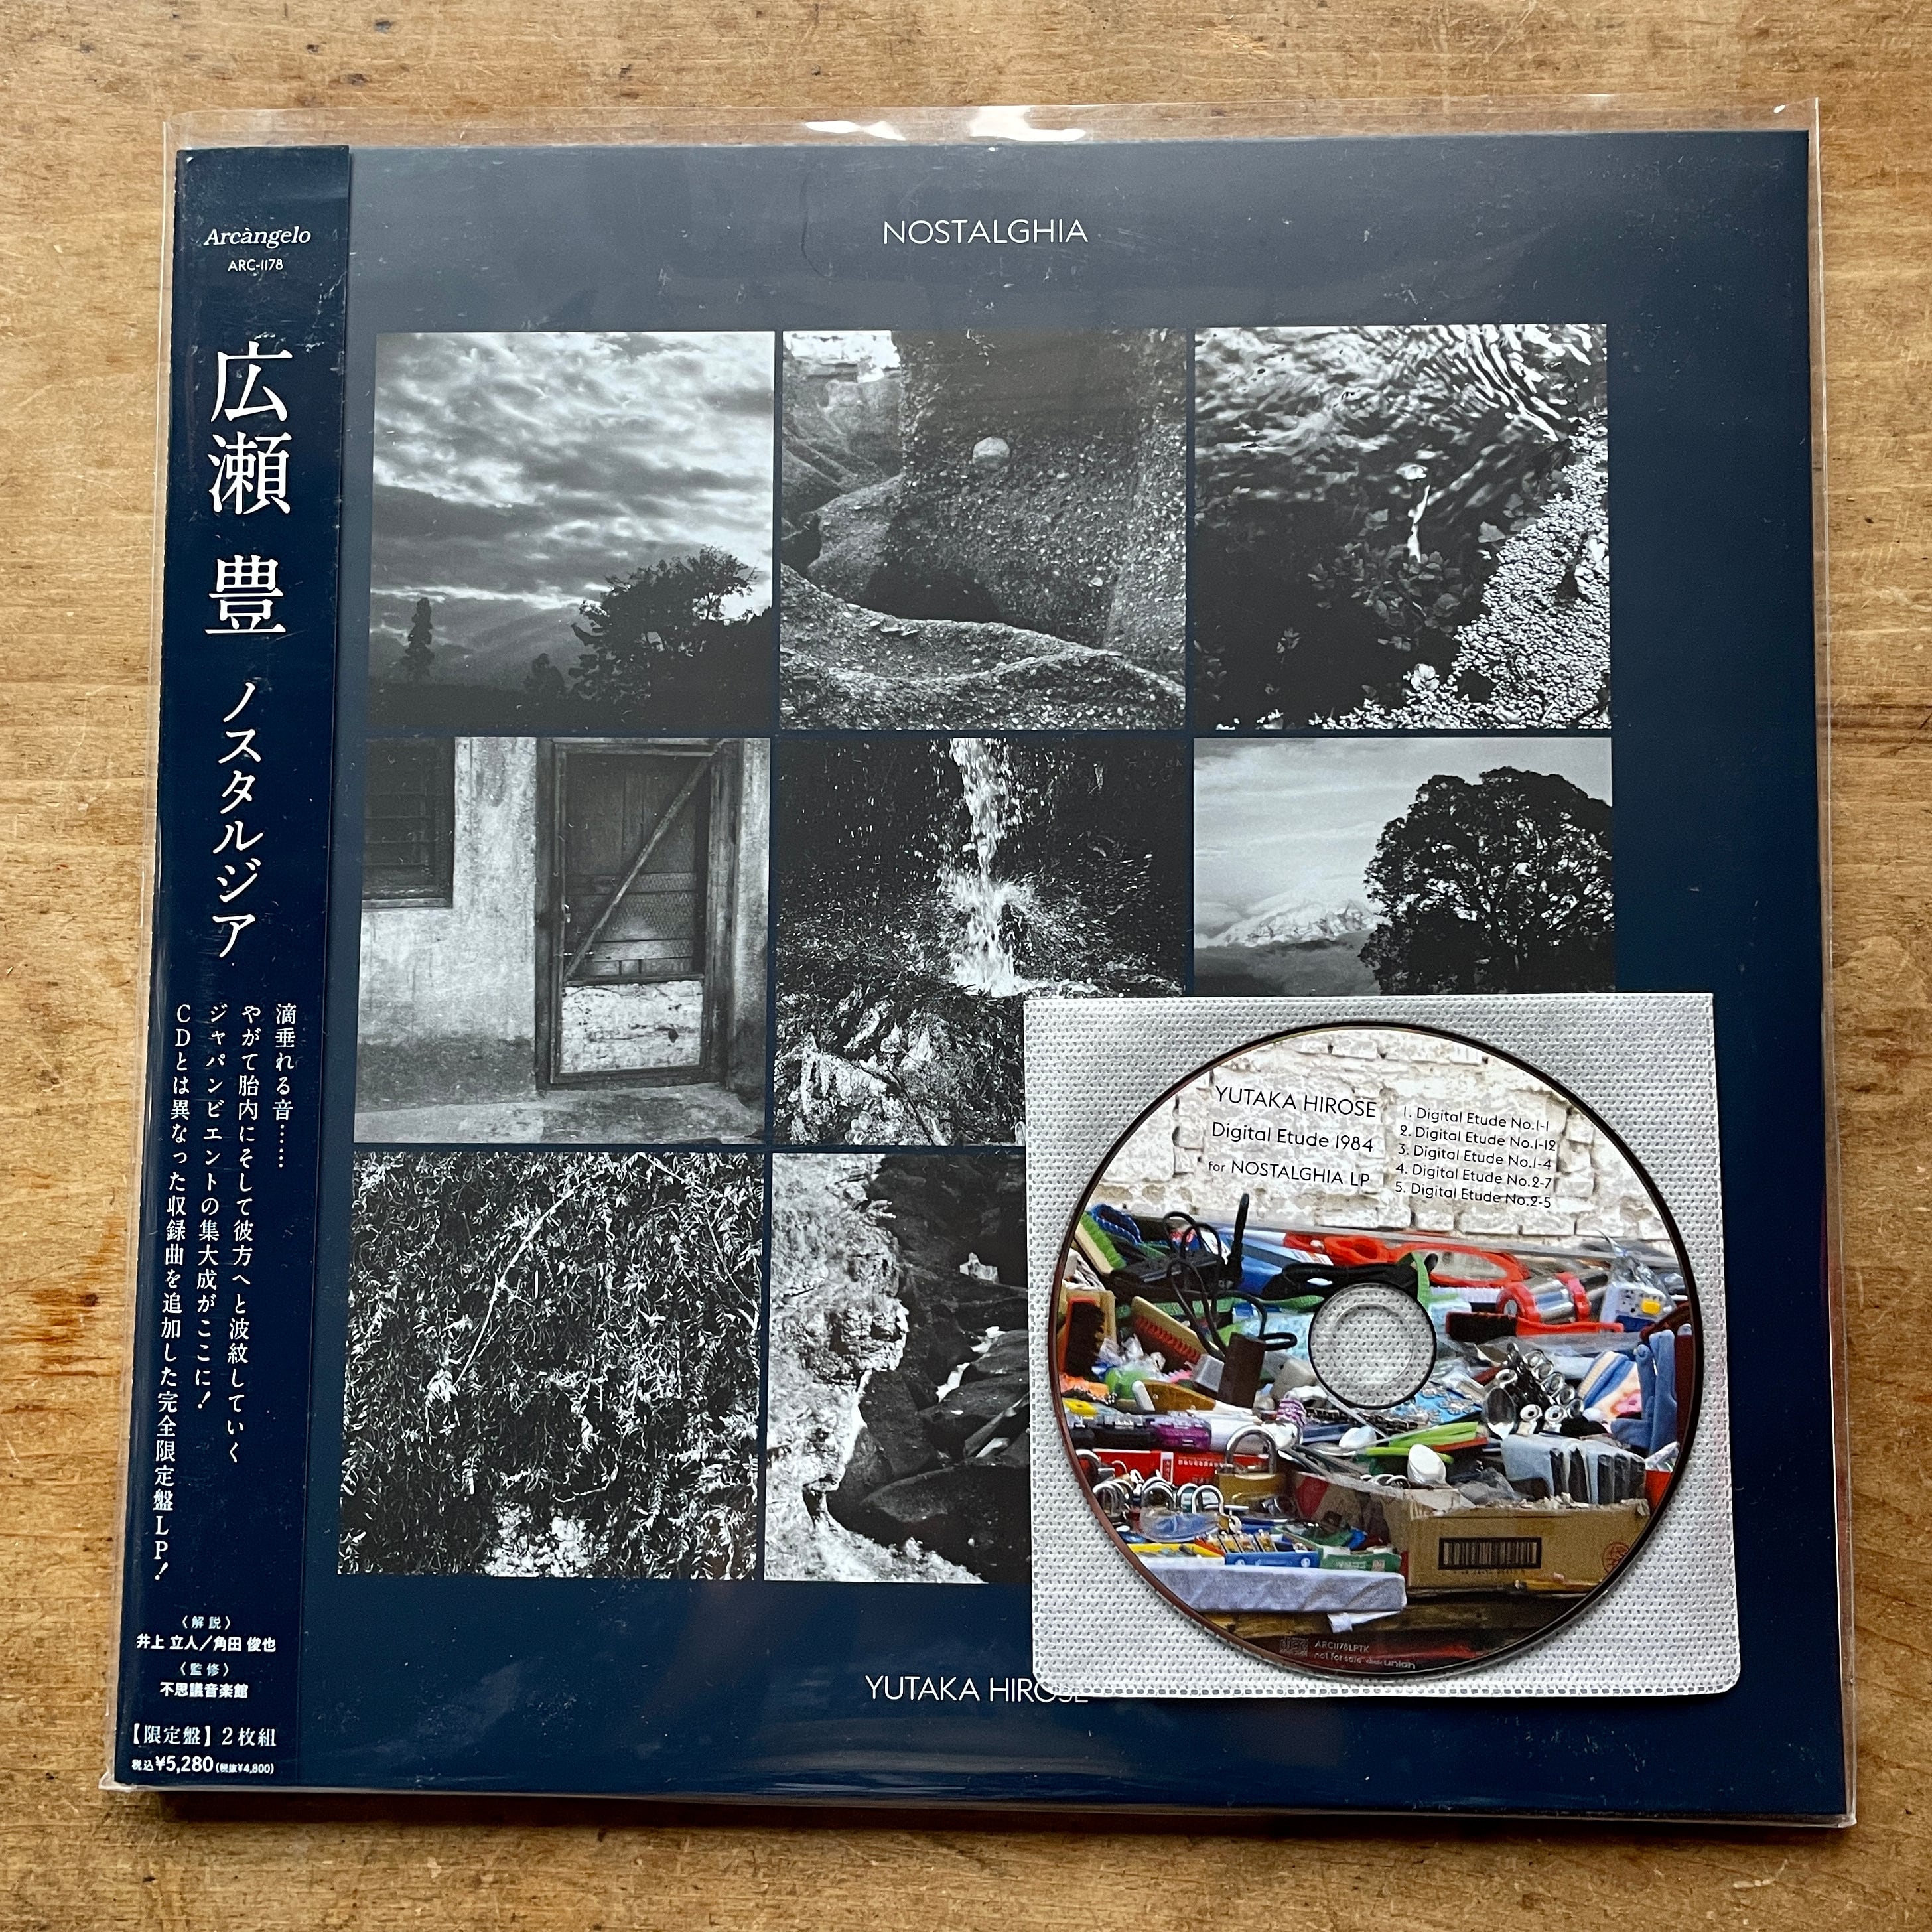 【新品LP】Yutaka Hirose  広瀬豊 　Nostalghia    2 × Vinyl 　2022   Arcangelo　特典CD Rつき　 (ご希望でサインします）　[310194347]